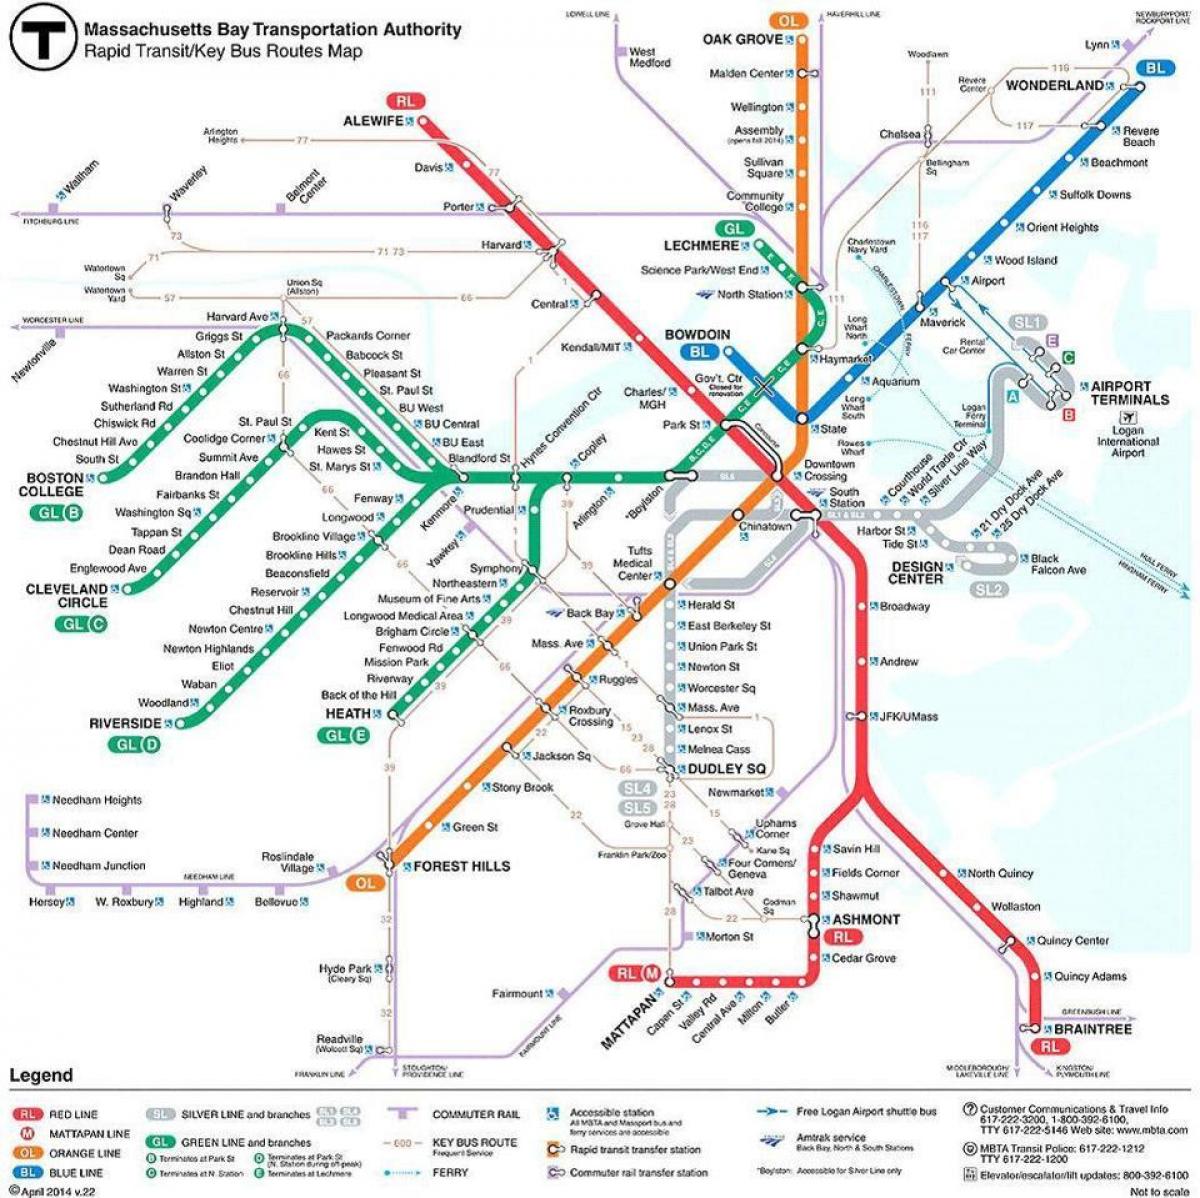 MBTA แผนที่บอสตัน